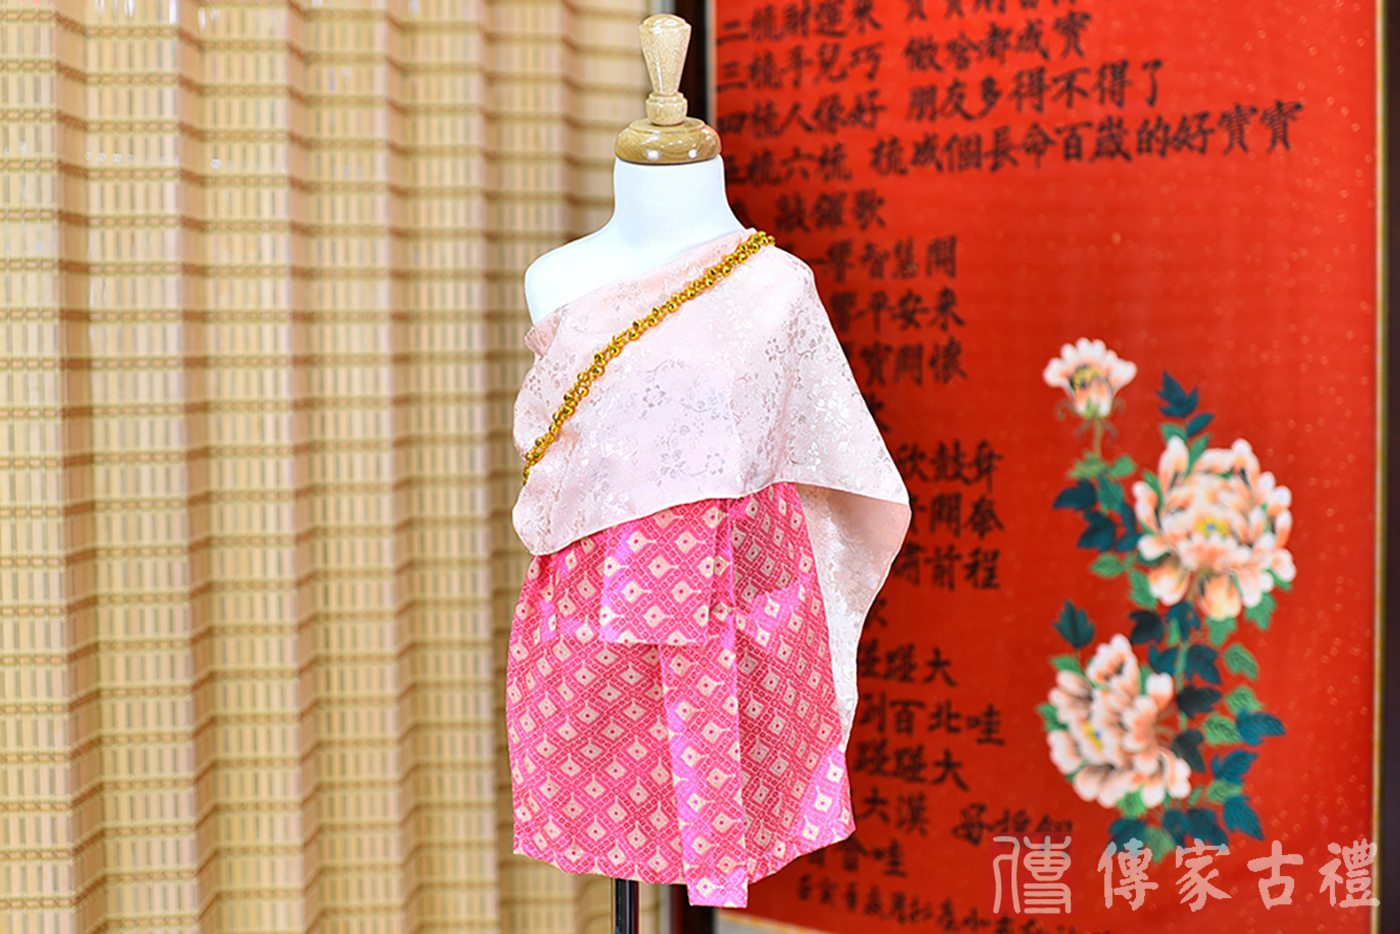 2024-02-22小孩皇室泰服古裝禮服。粉色的綢緞披肩搭配紅色小方狀裙裝的泰式古裝禮服。照片集